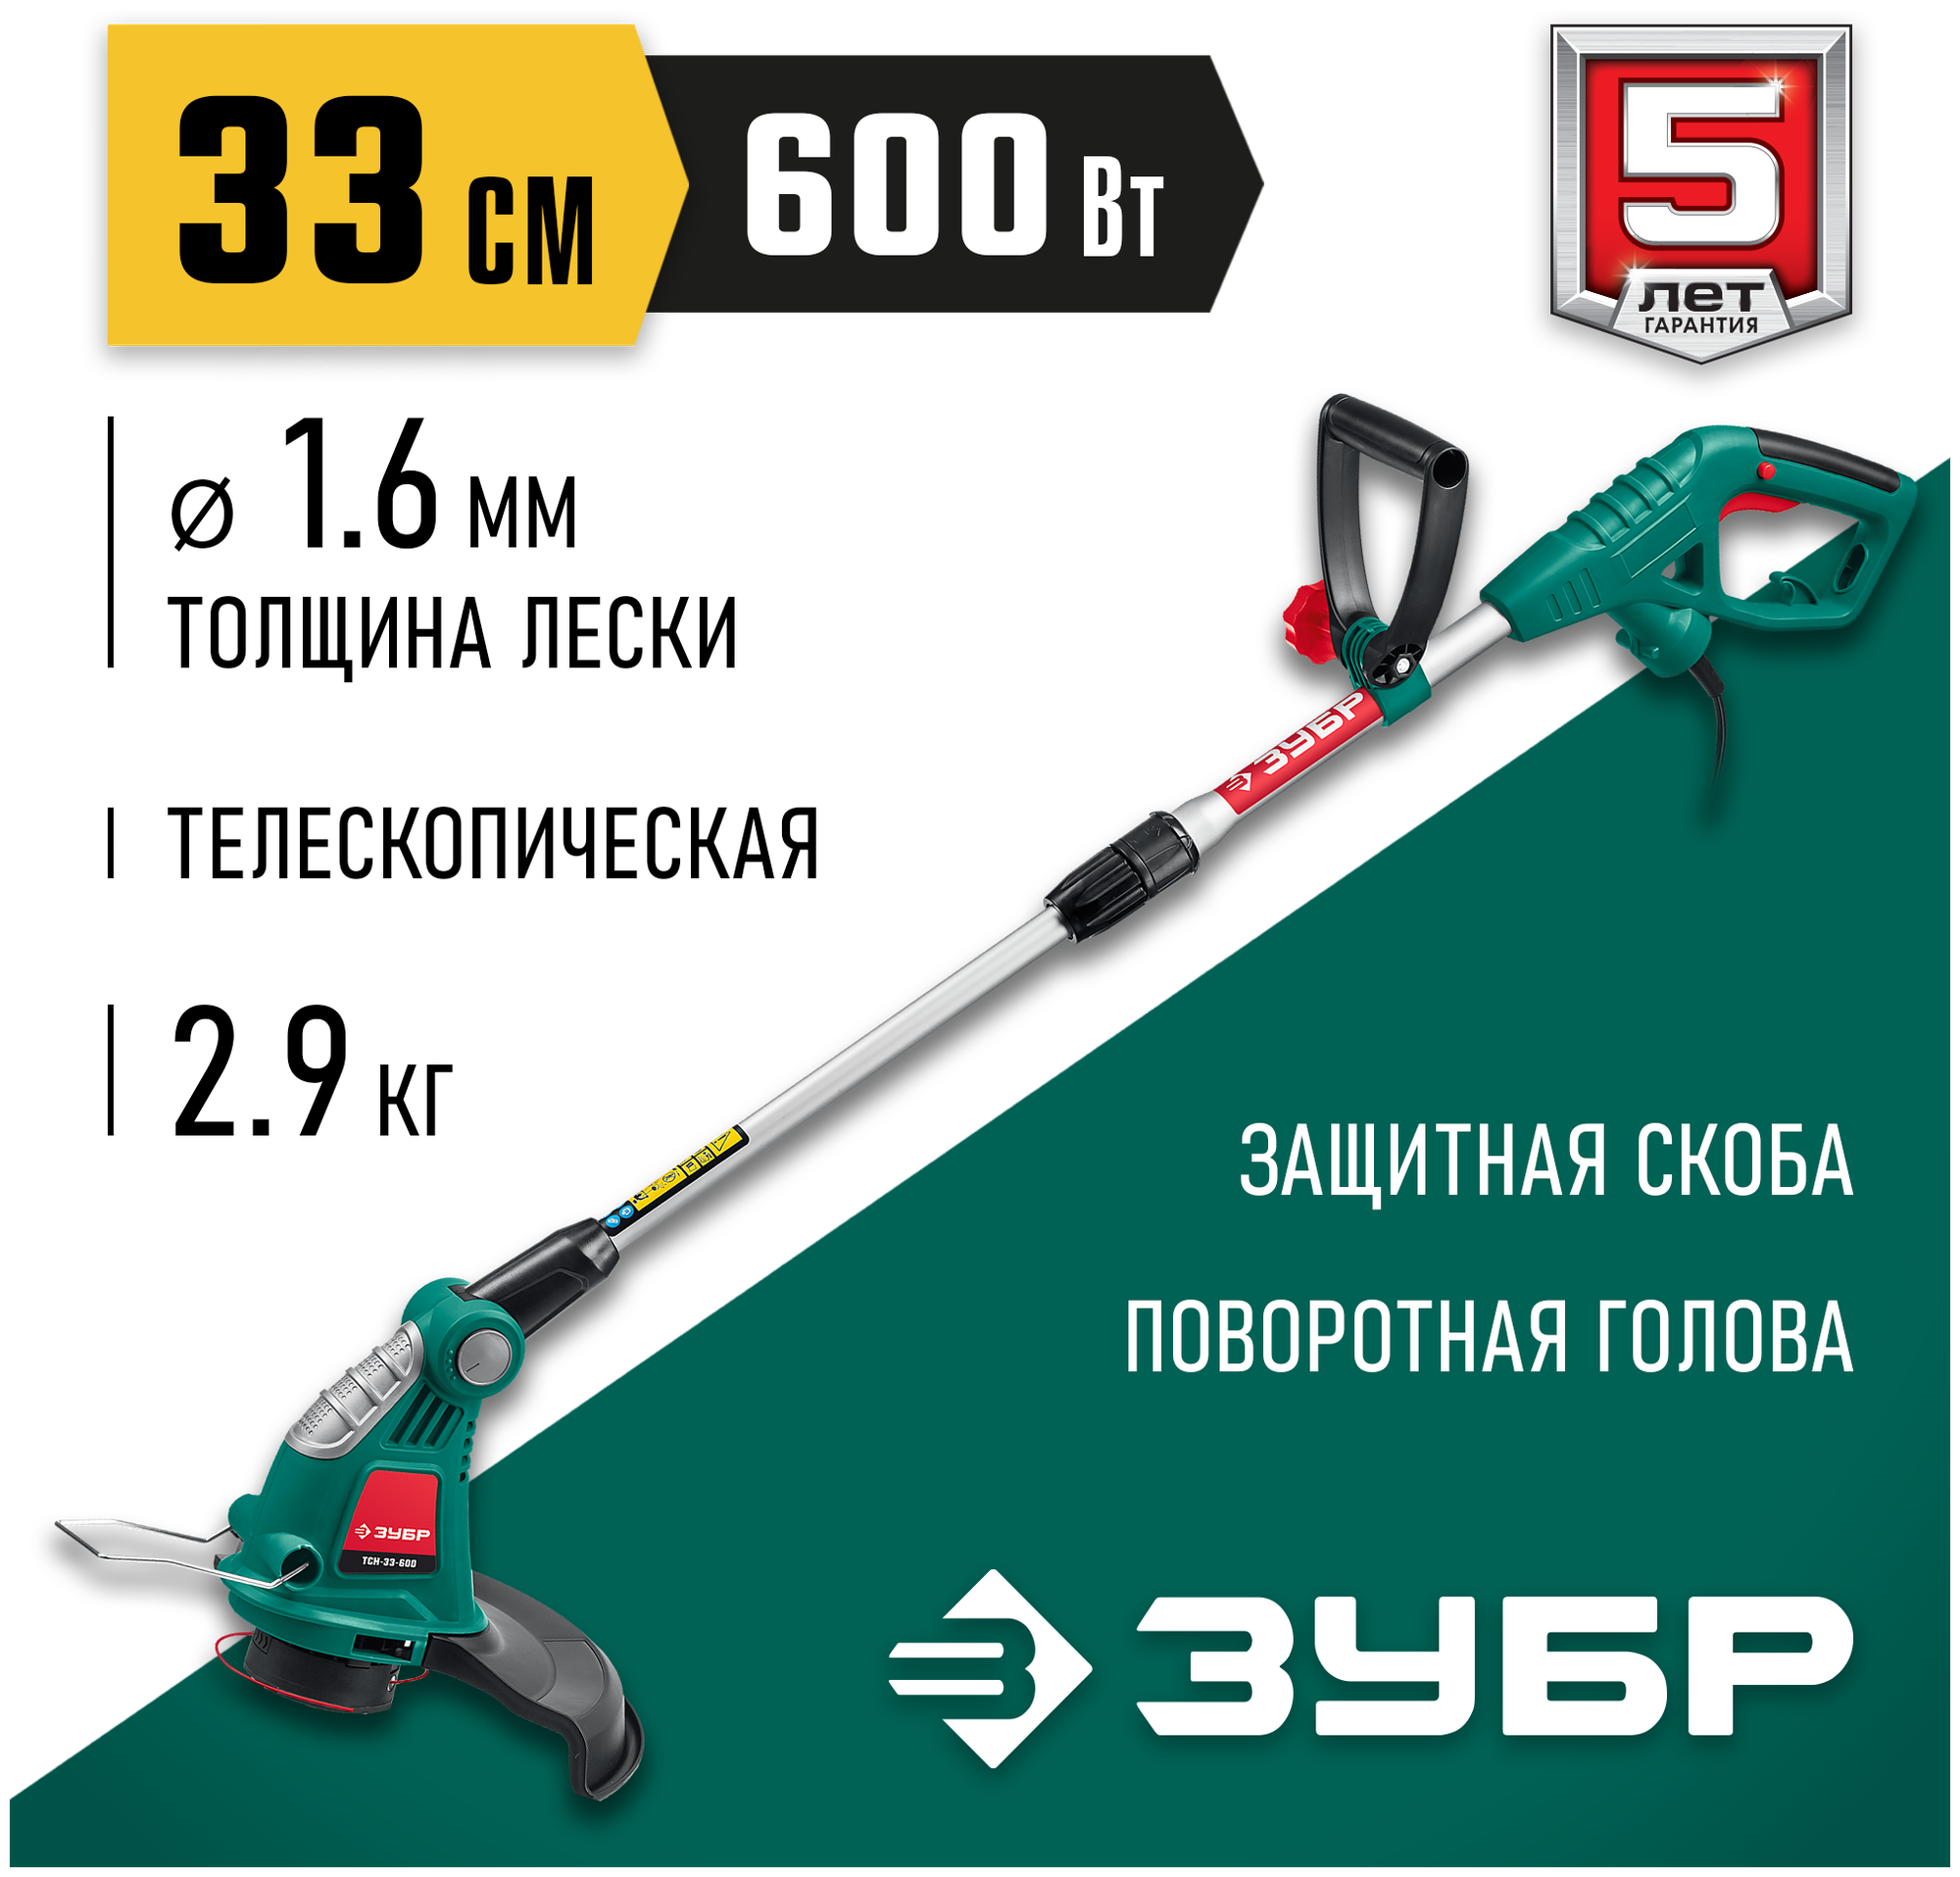 Триммер электрический Зубр ТСН-33-600 600Вт разбор.штан. реж.эл.:леска